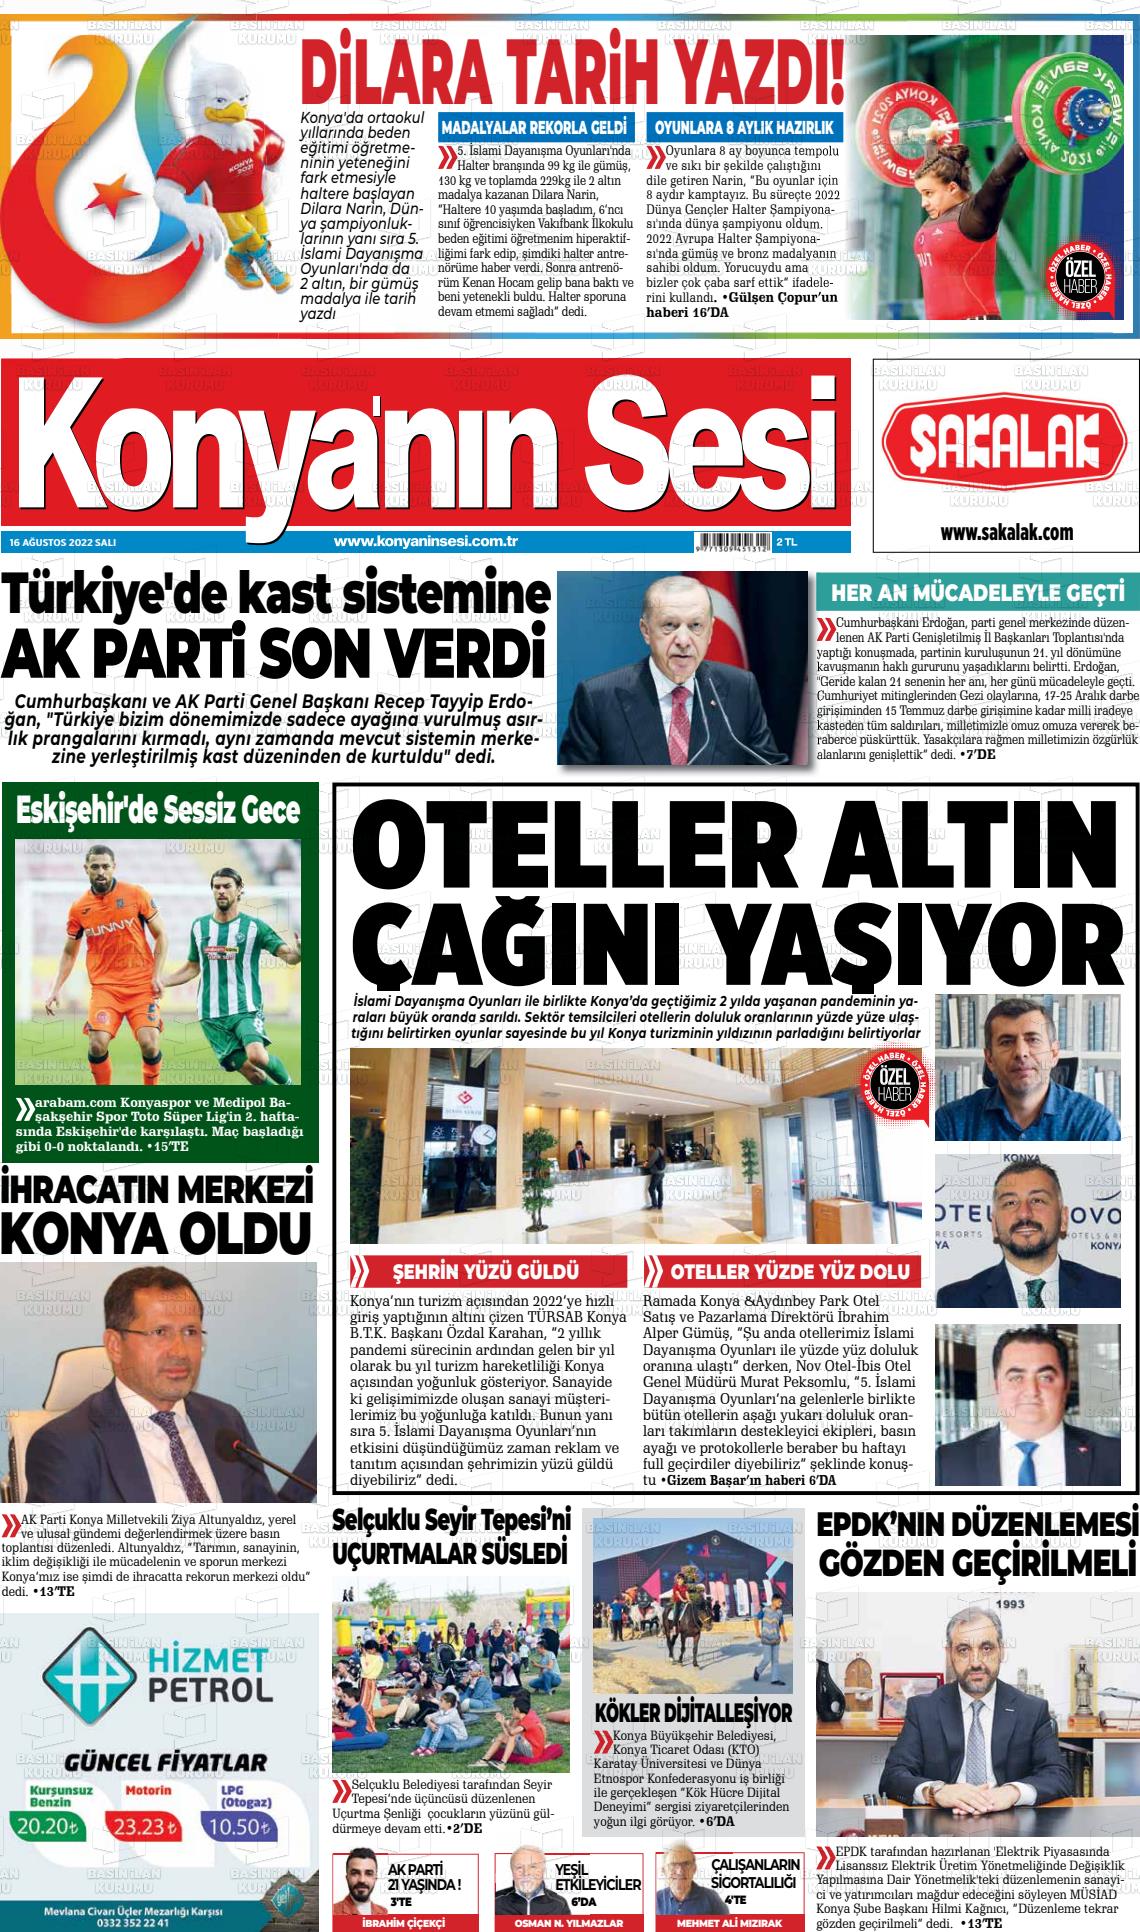 16 Ağustos 2022 Konyanin Sesi Gazete Manşeti